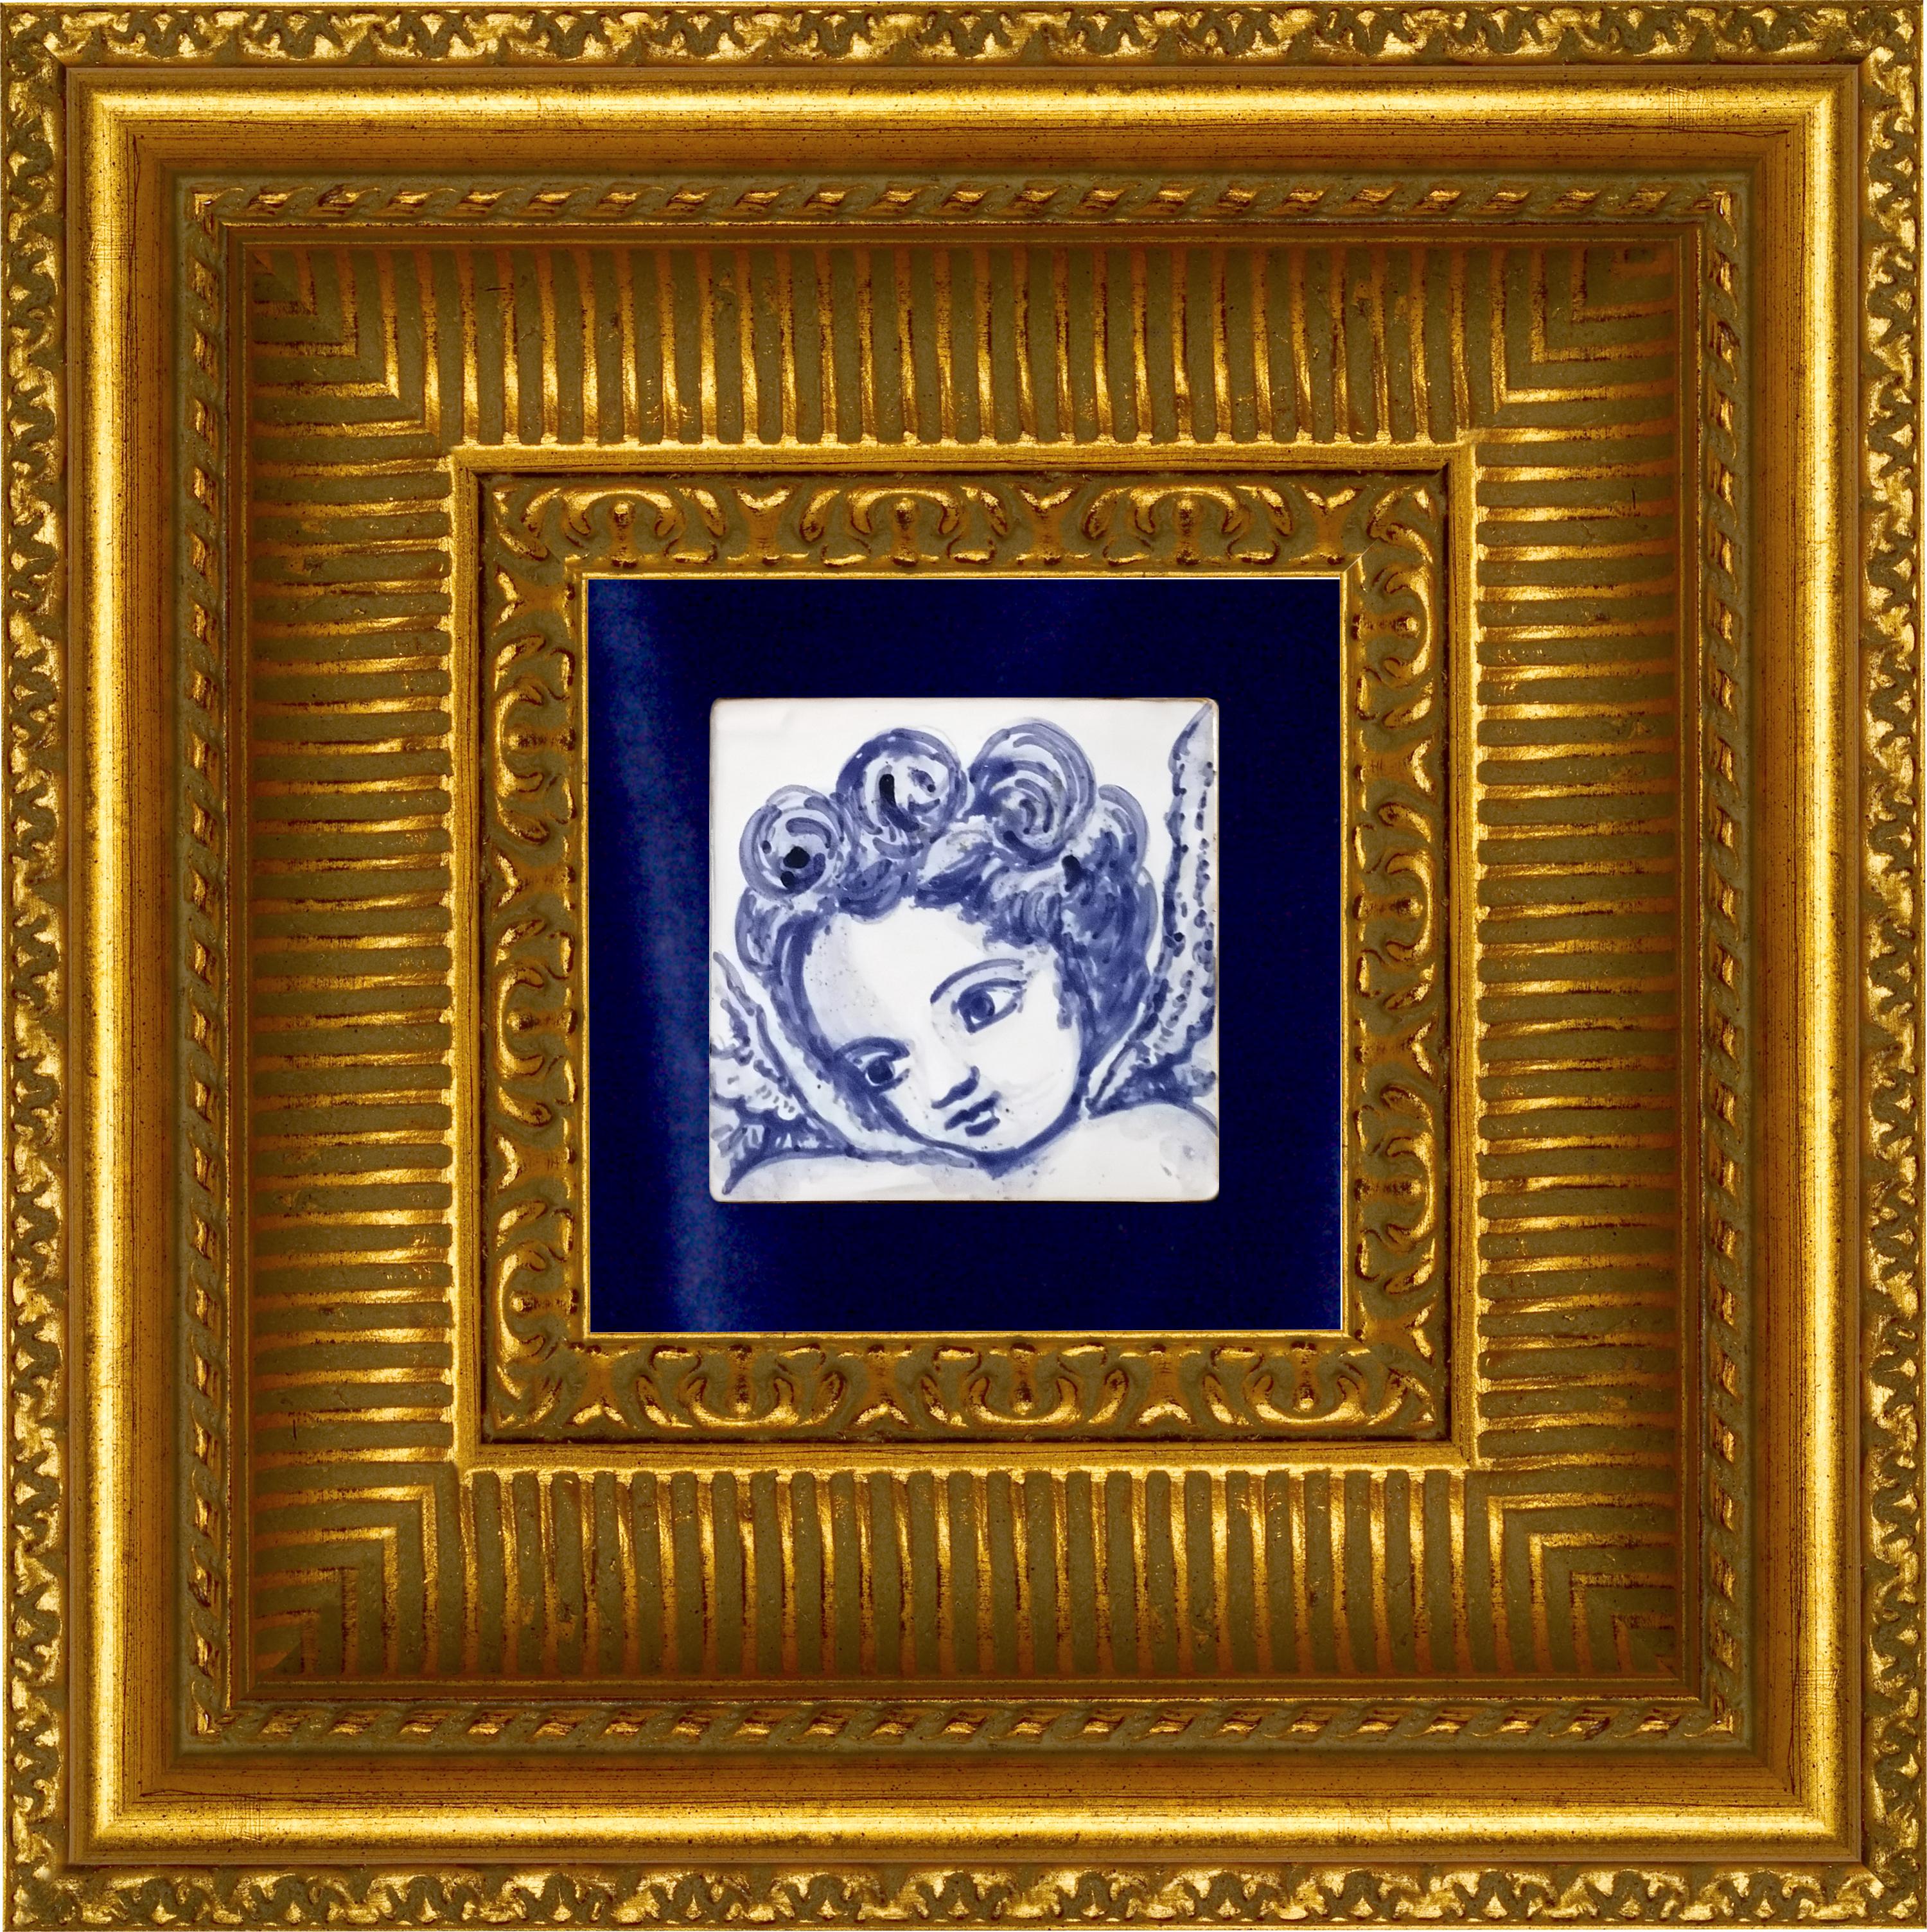 Superbe carreau de céramique portugais/azulejo bleu peint à la main, de style baroque, représentant un angelot ou un ange, datant du 18e siècle
Le carreau peint en bleu cobalt sur fond blanc, typique du Portugal du XVIIIe siècle, a donné le goût